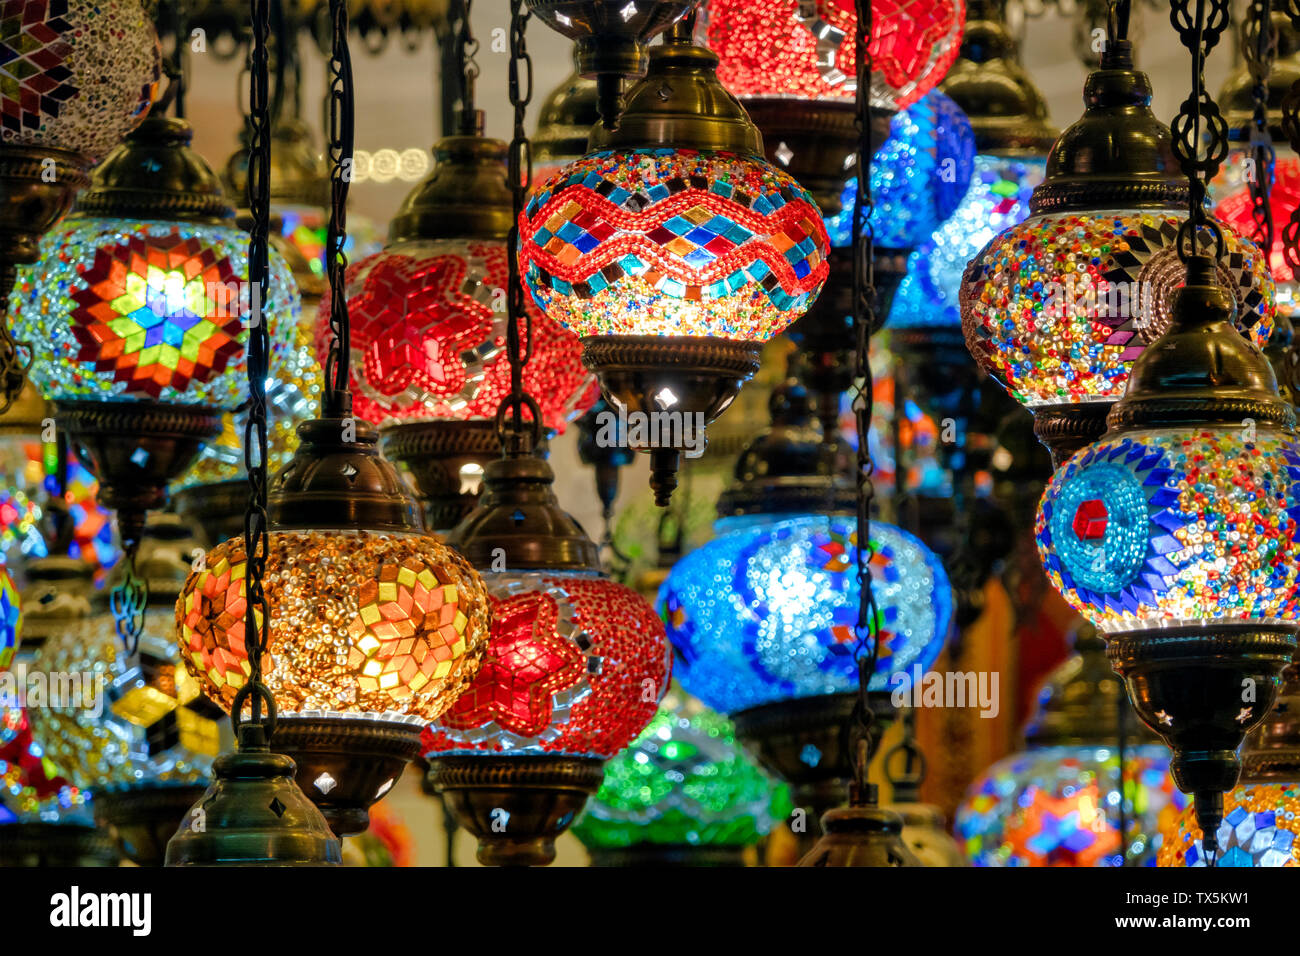 Nahaufnahme von einem hängenden Mosaik Lampe Stockfoto